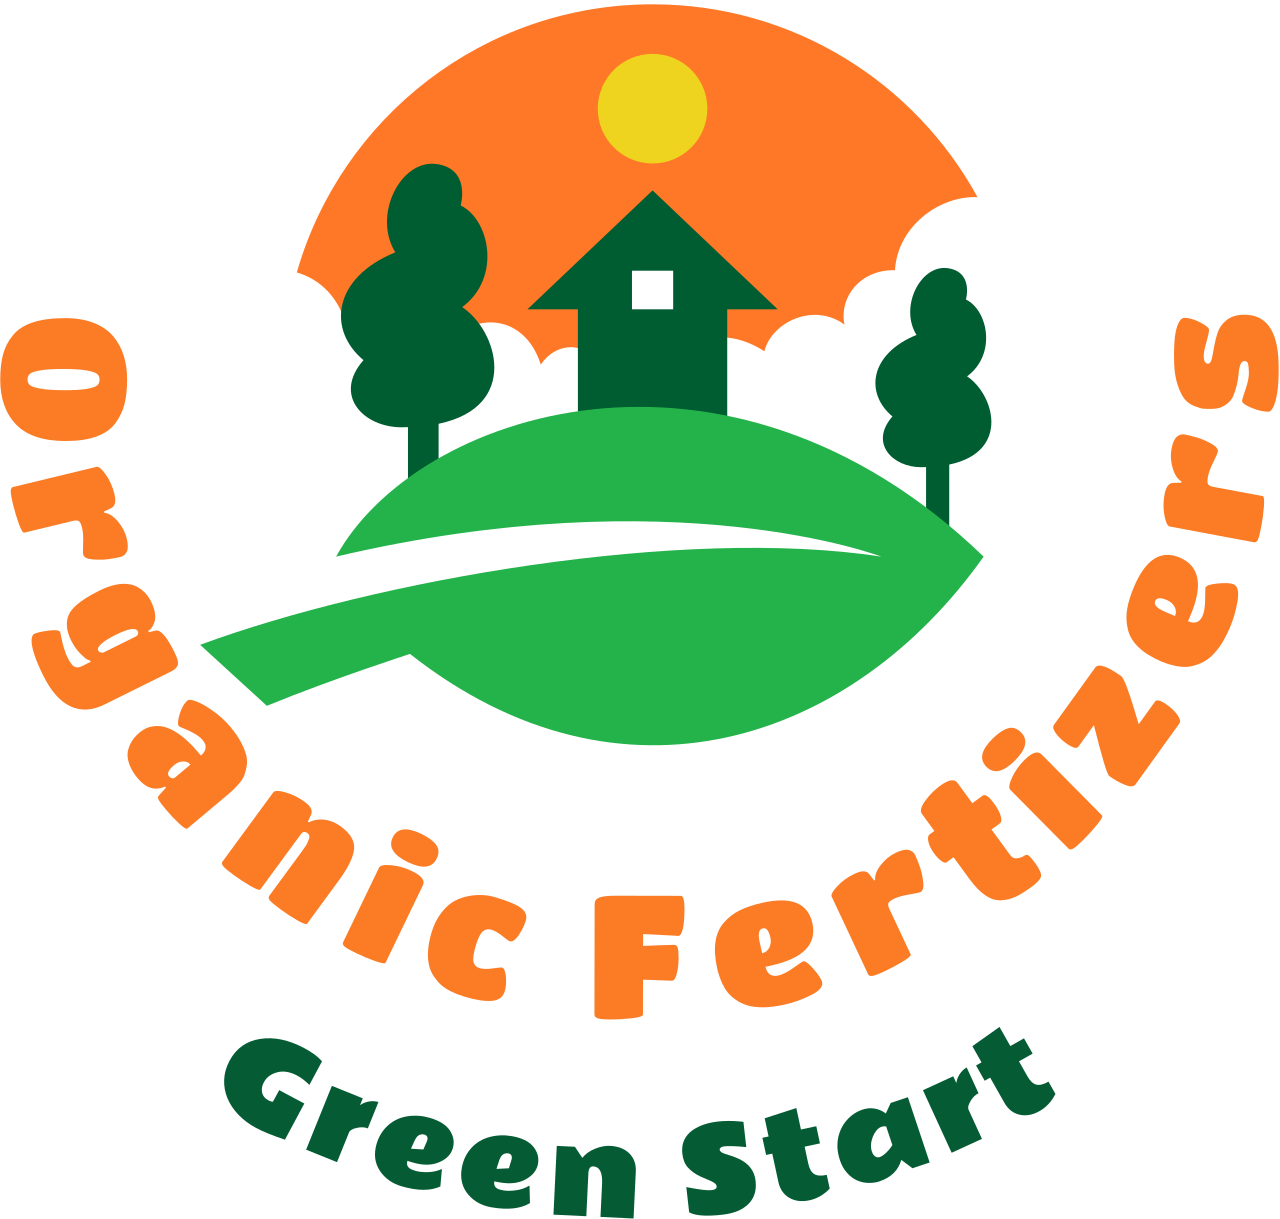 Organic Fertizers's web page